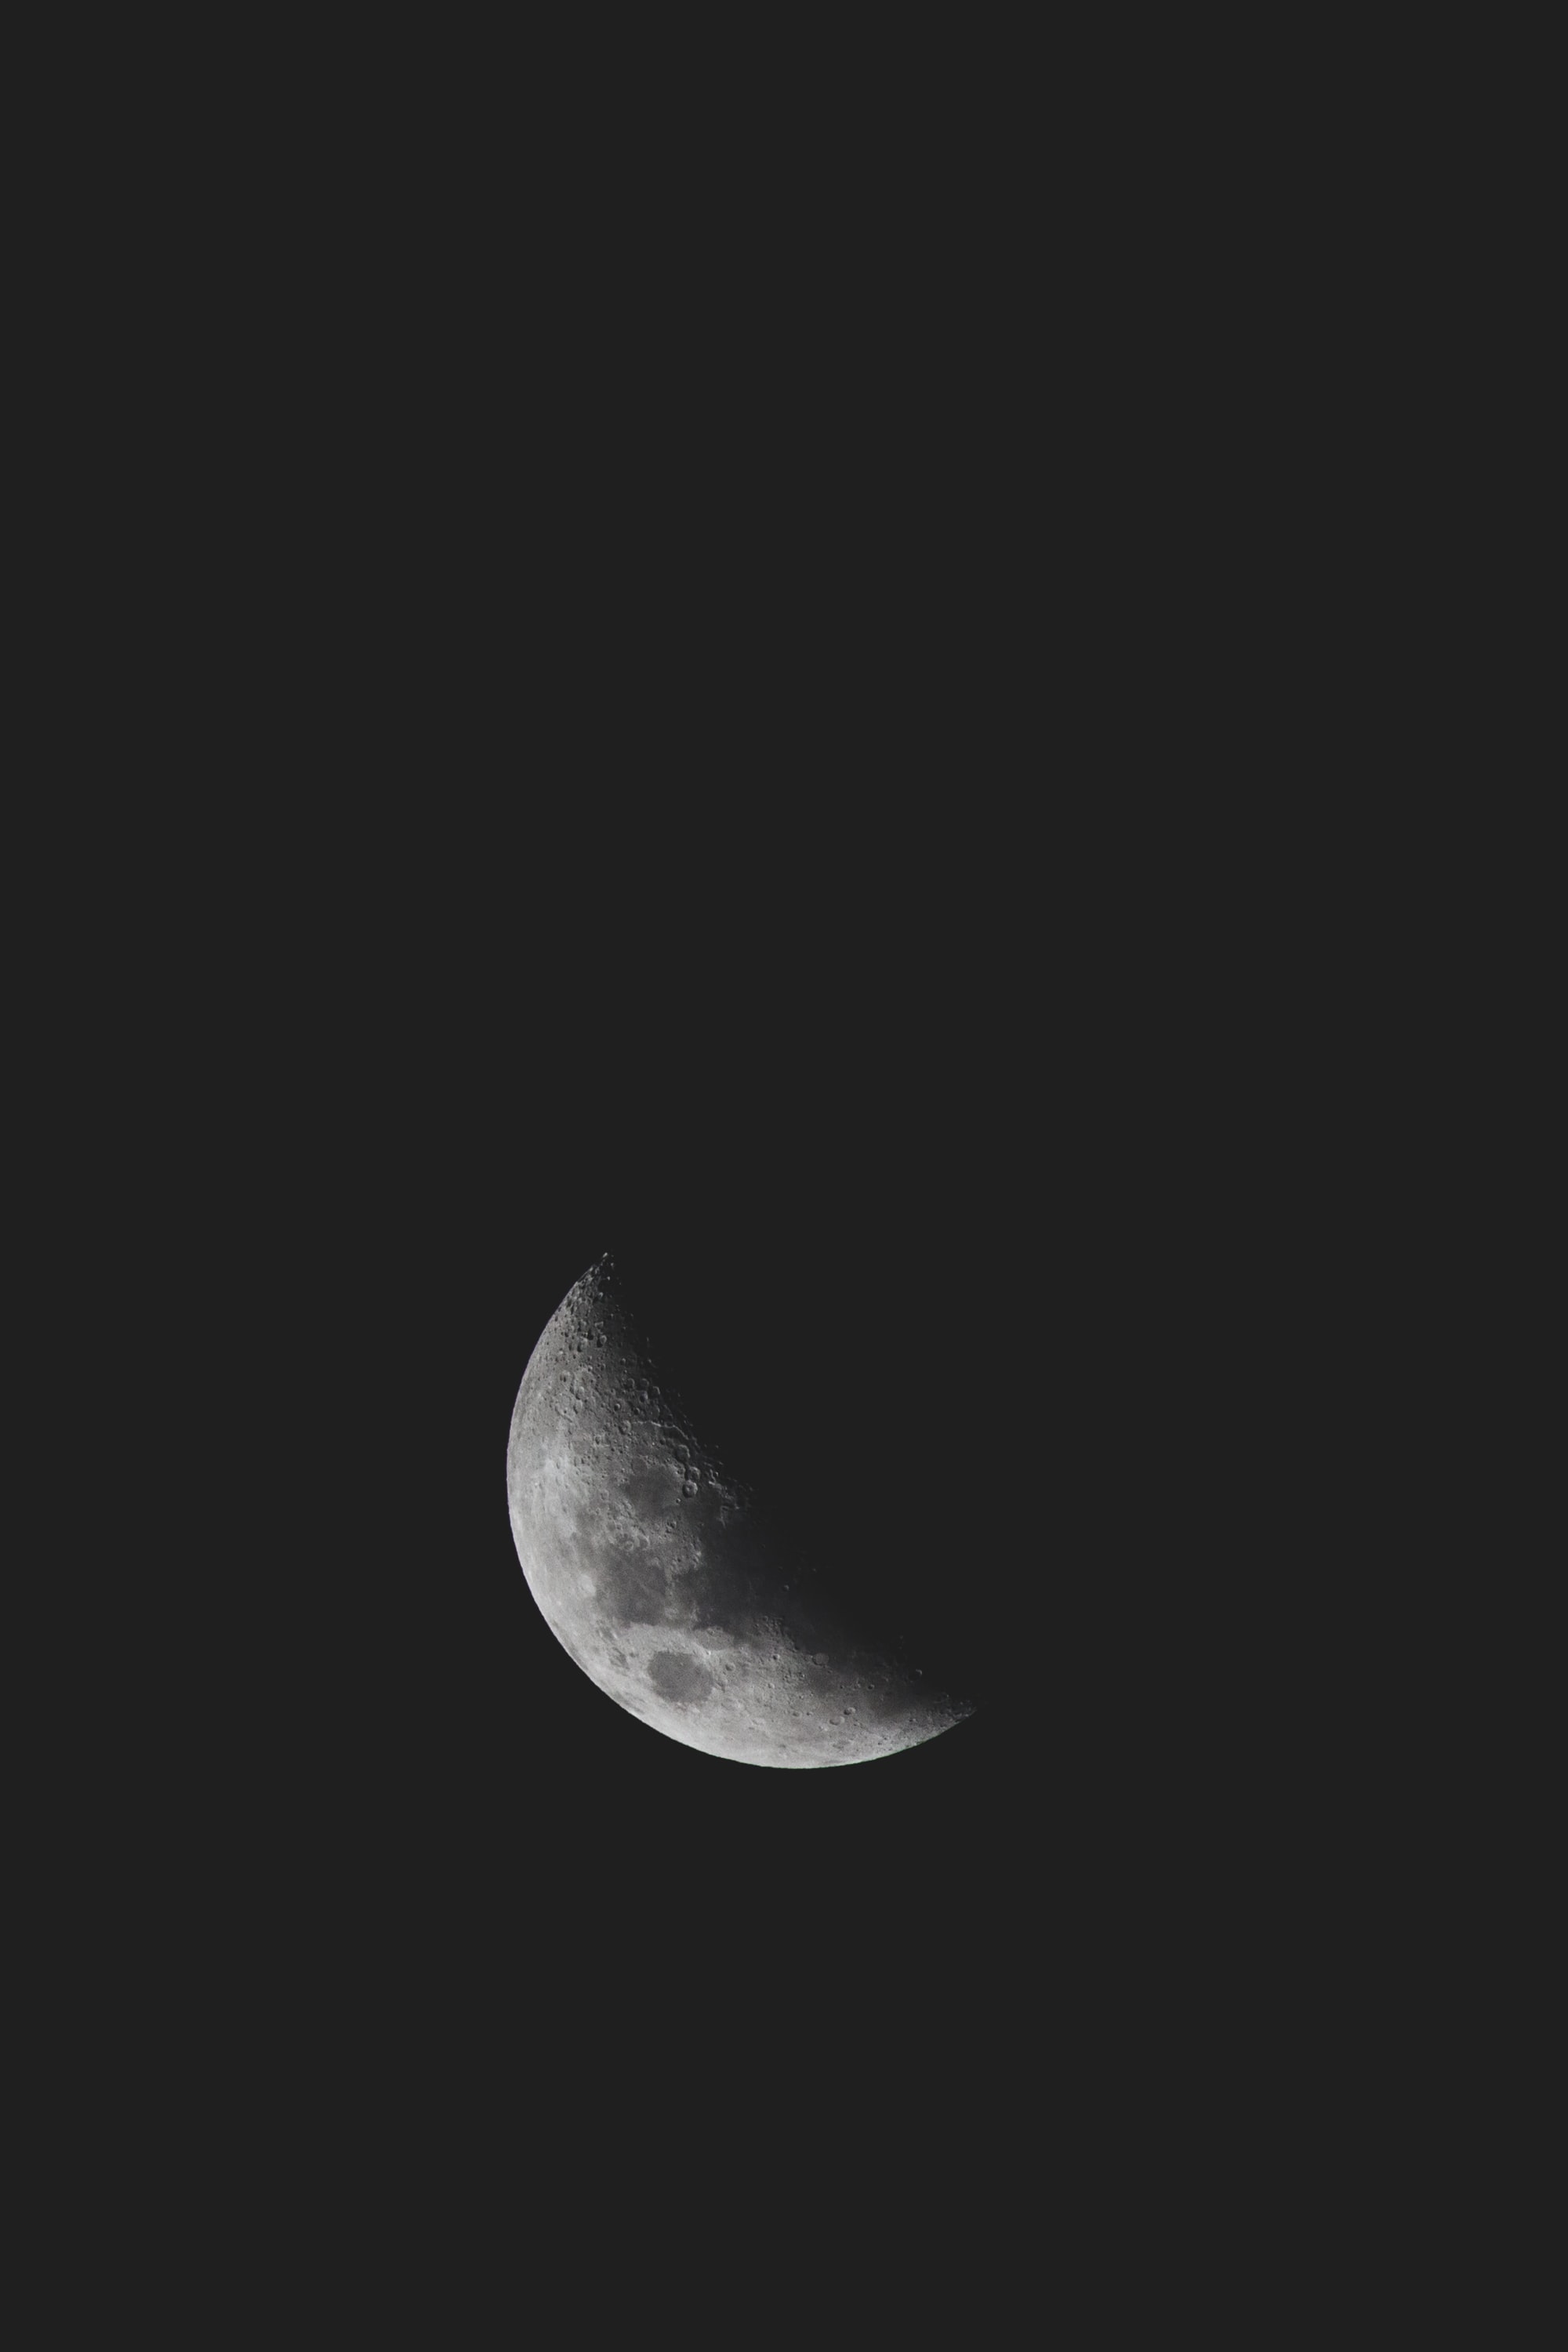 moon, black, dark, minimalism, bw, chb, craters